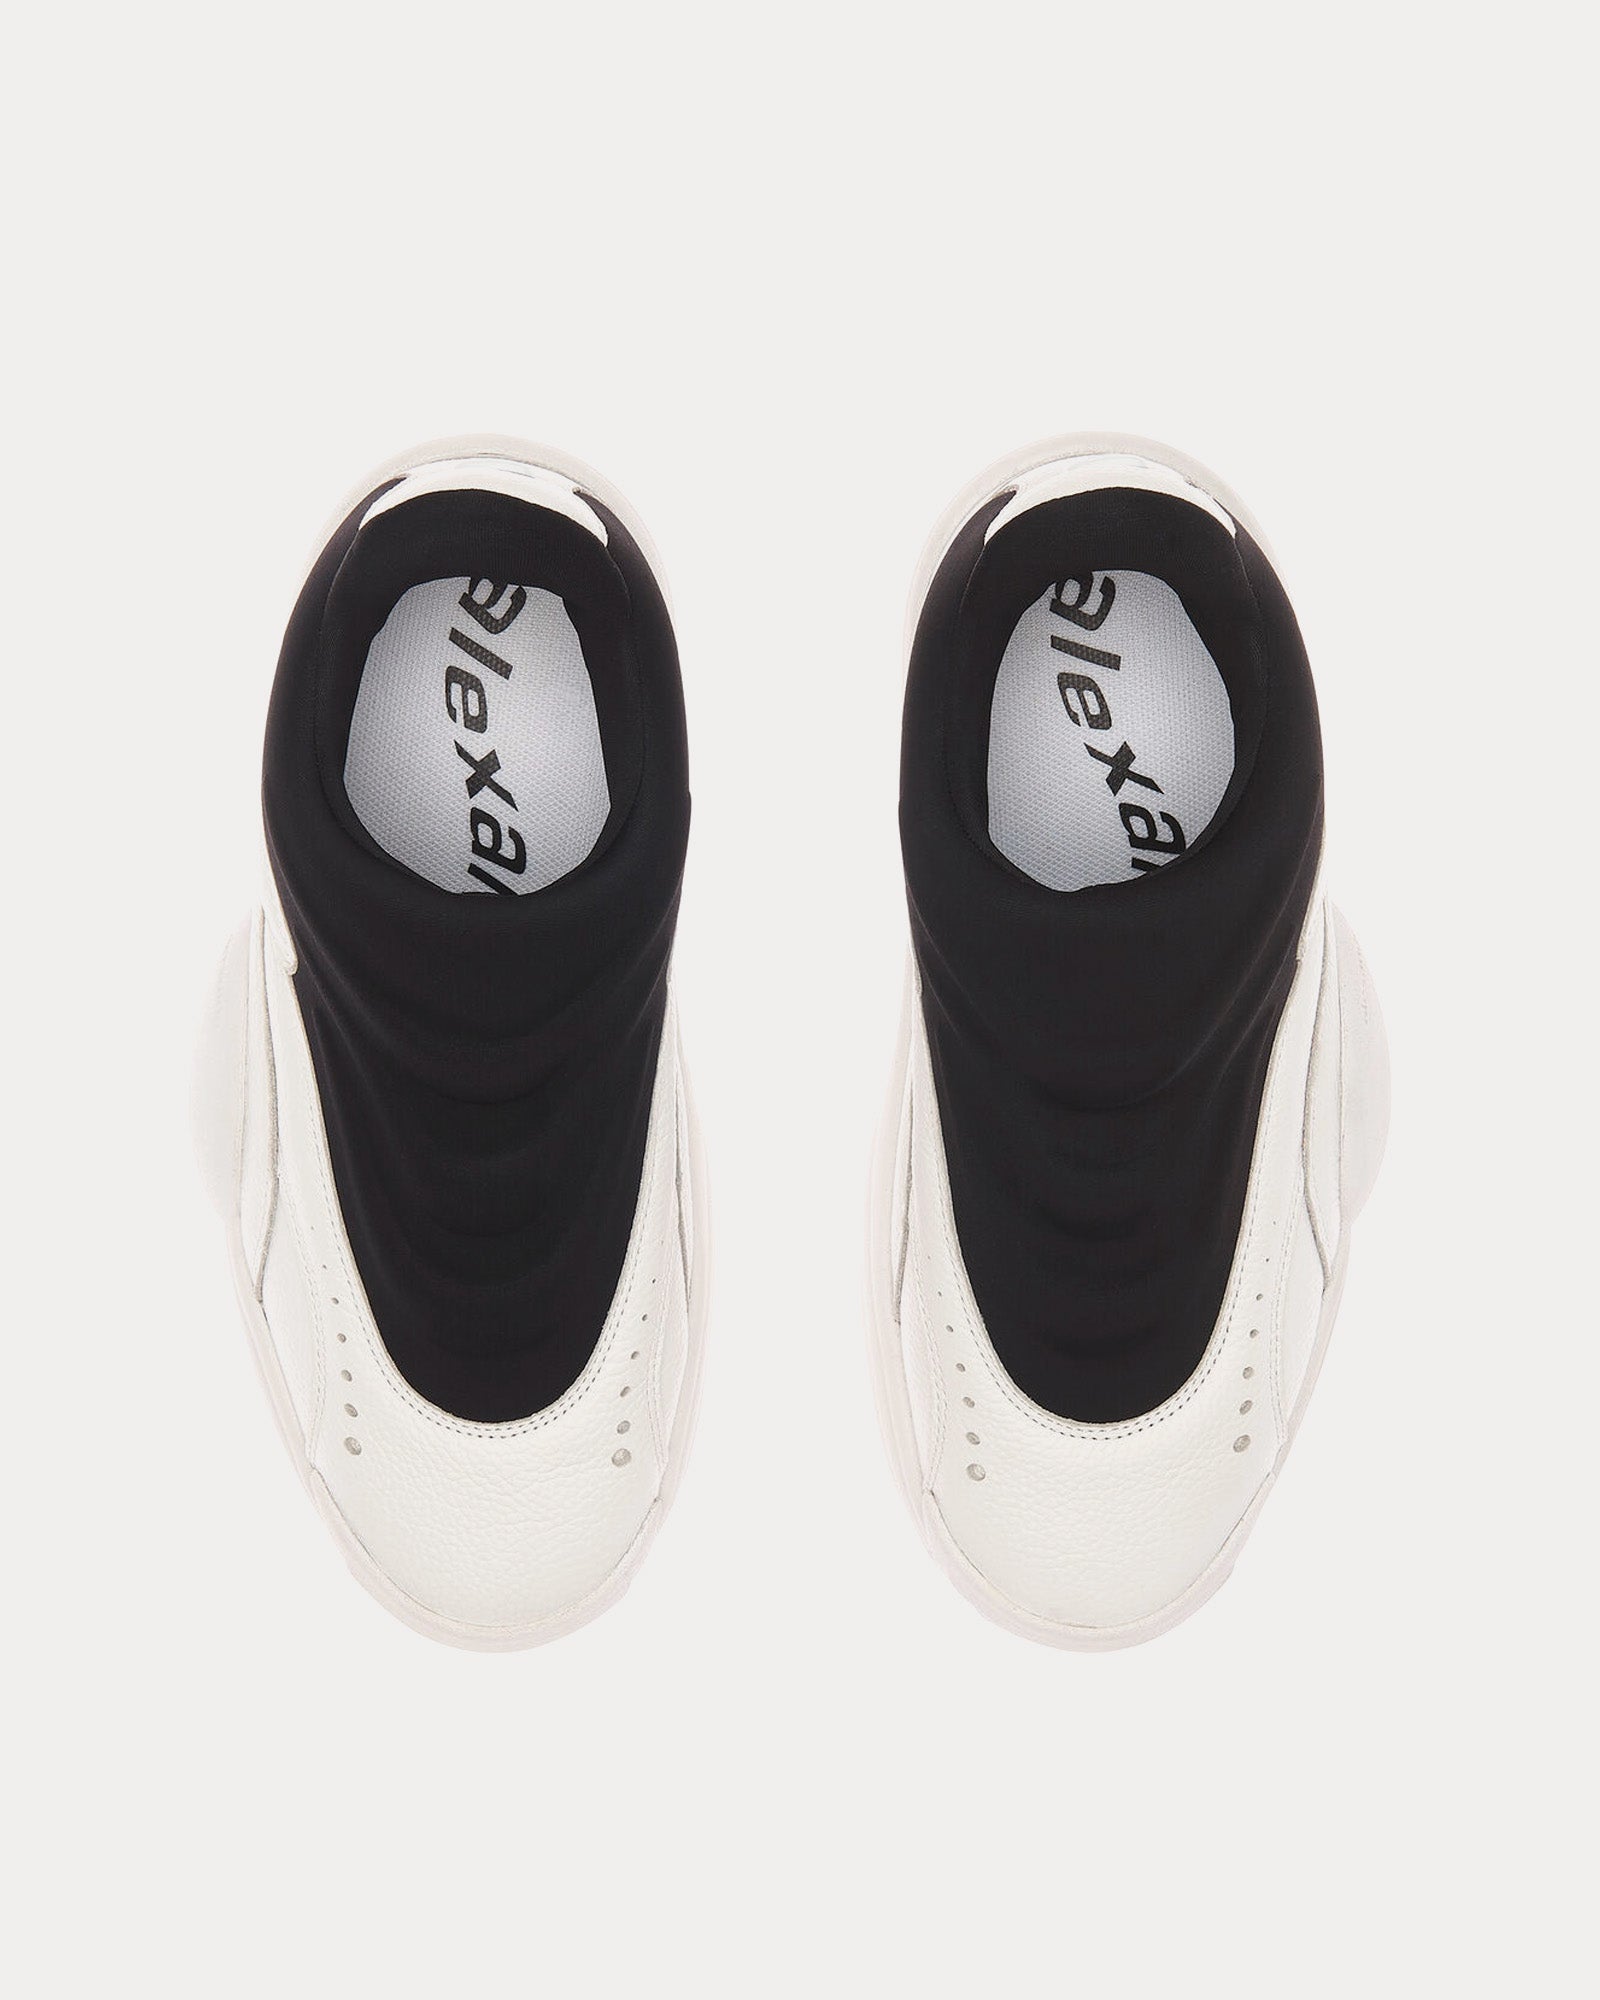 Alexander Wang - AW Hoop Pebble Leather White / Black Slip On Sneakers